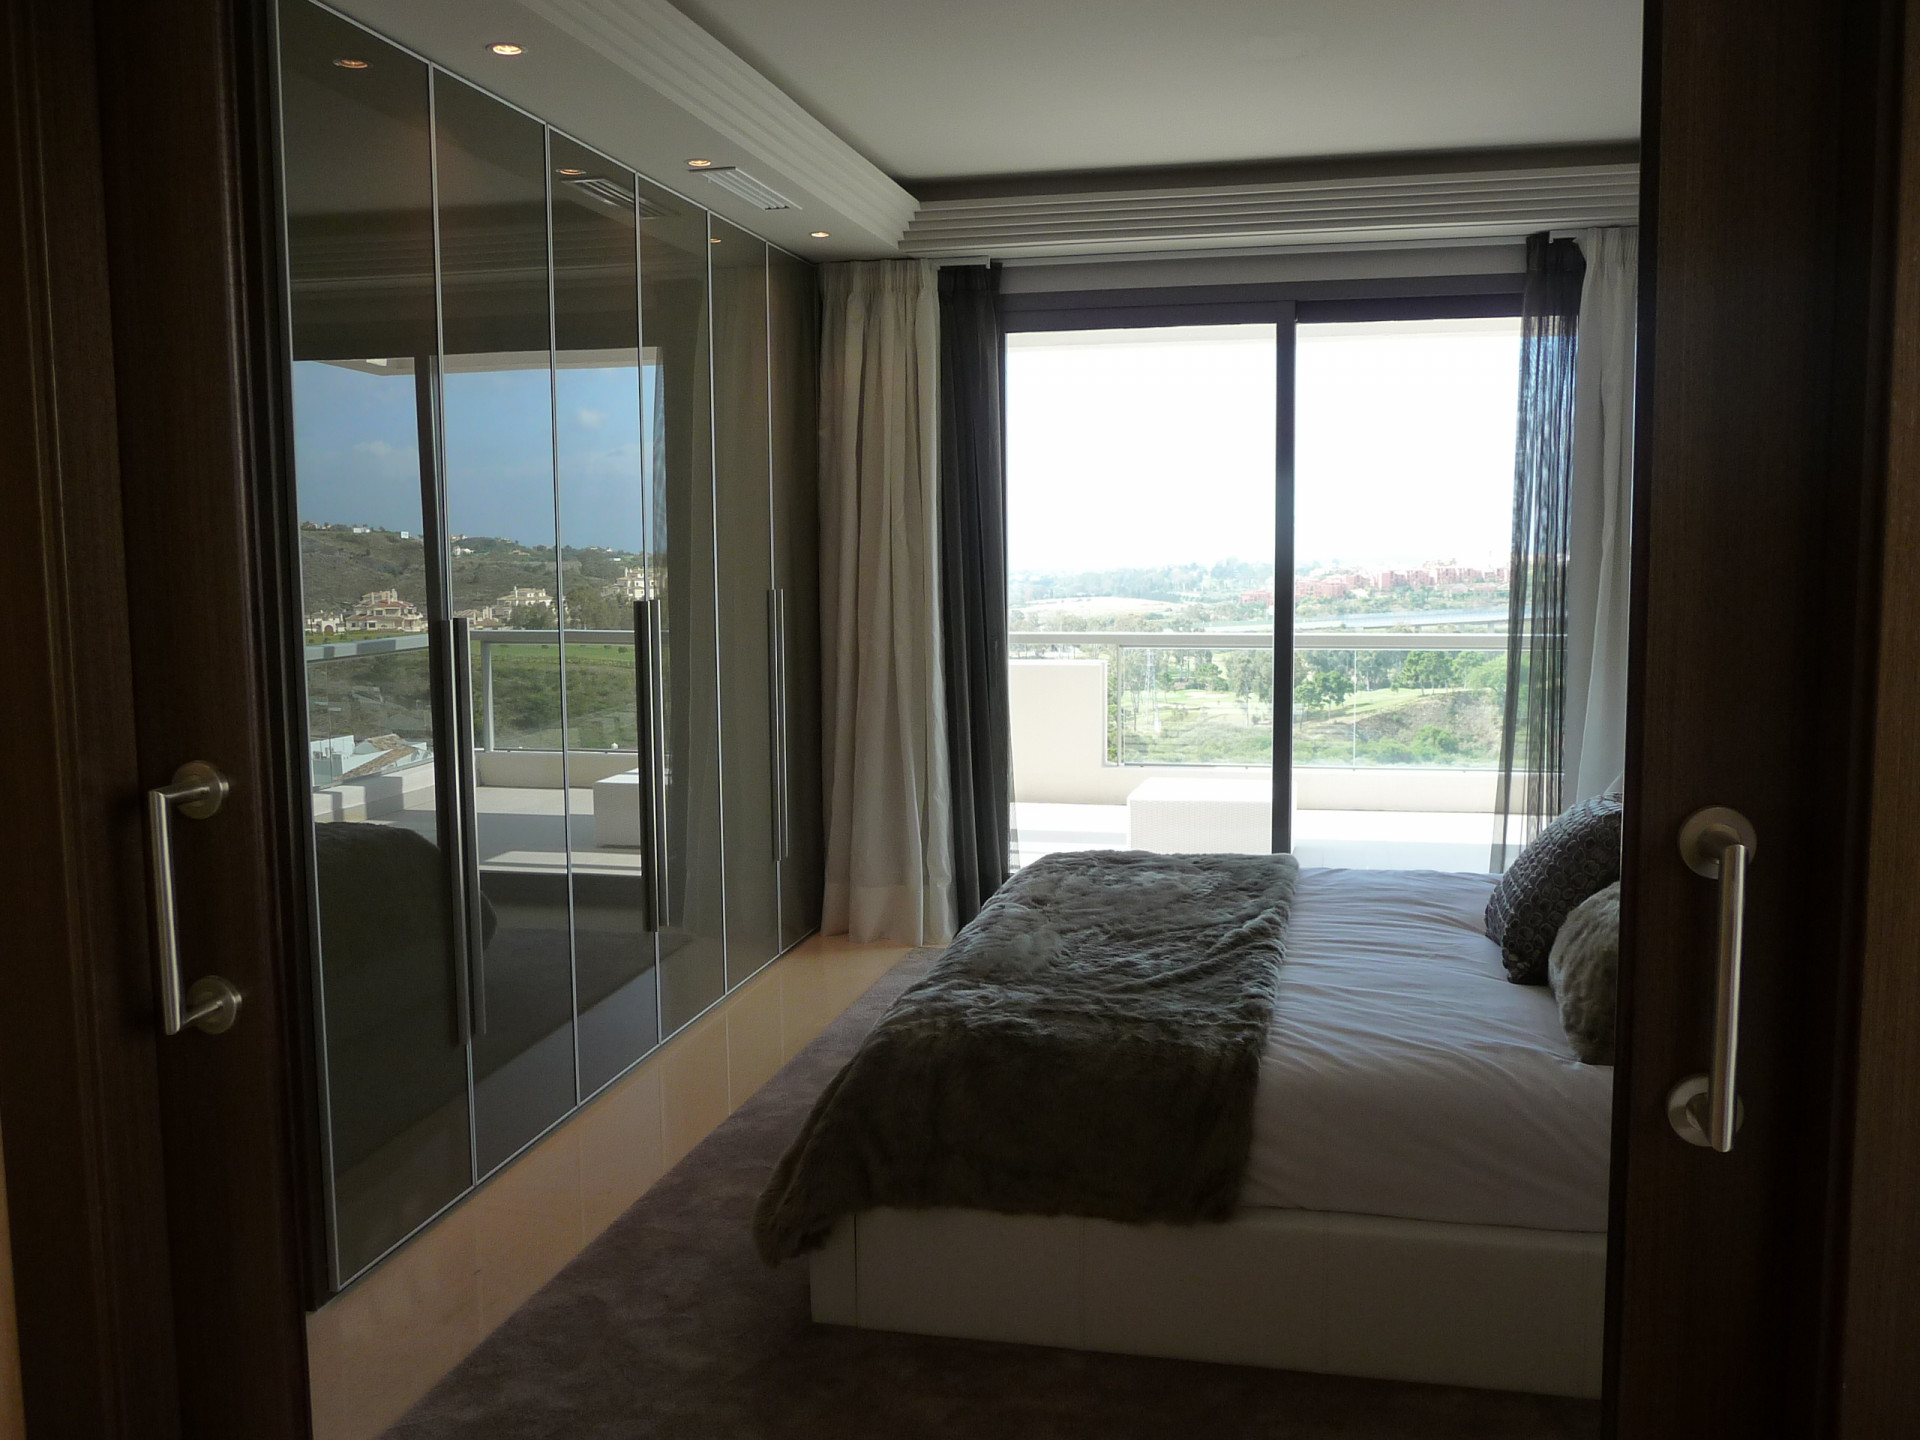 			Fantástico apartamento de 2 dormitorios con vistas panorámicas al mar
	